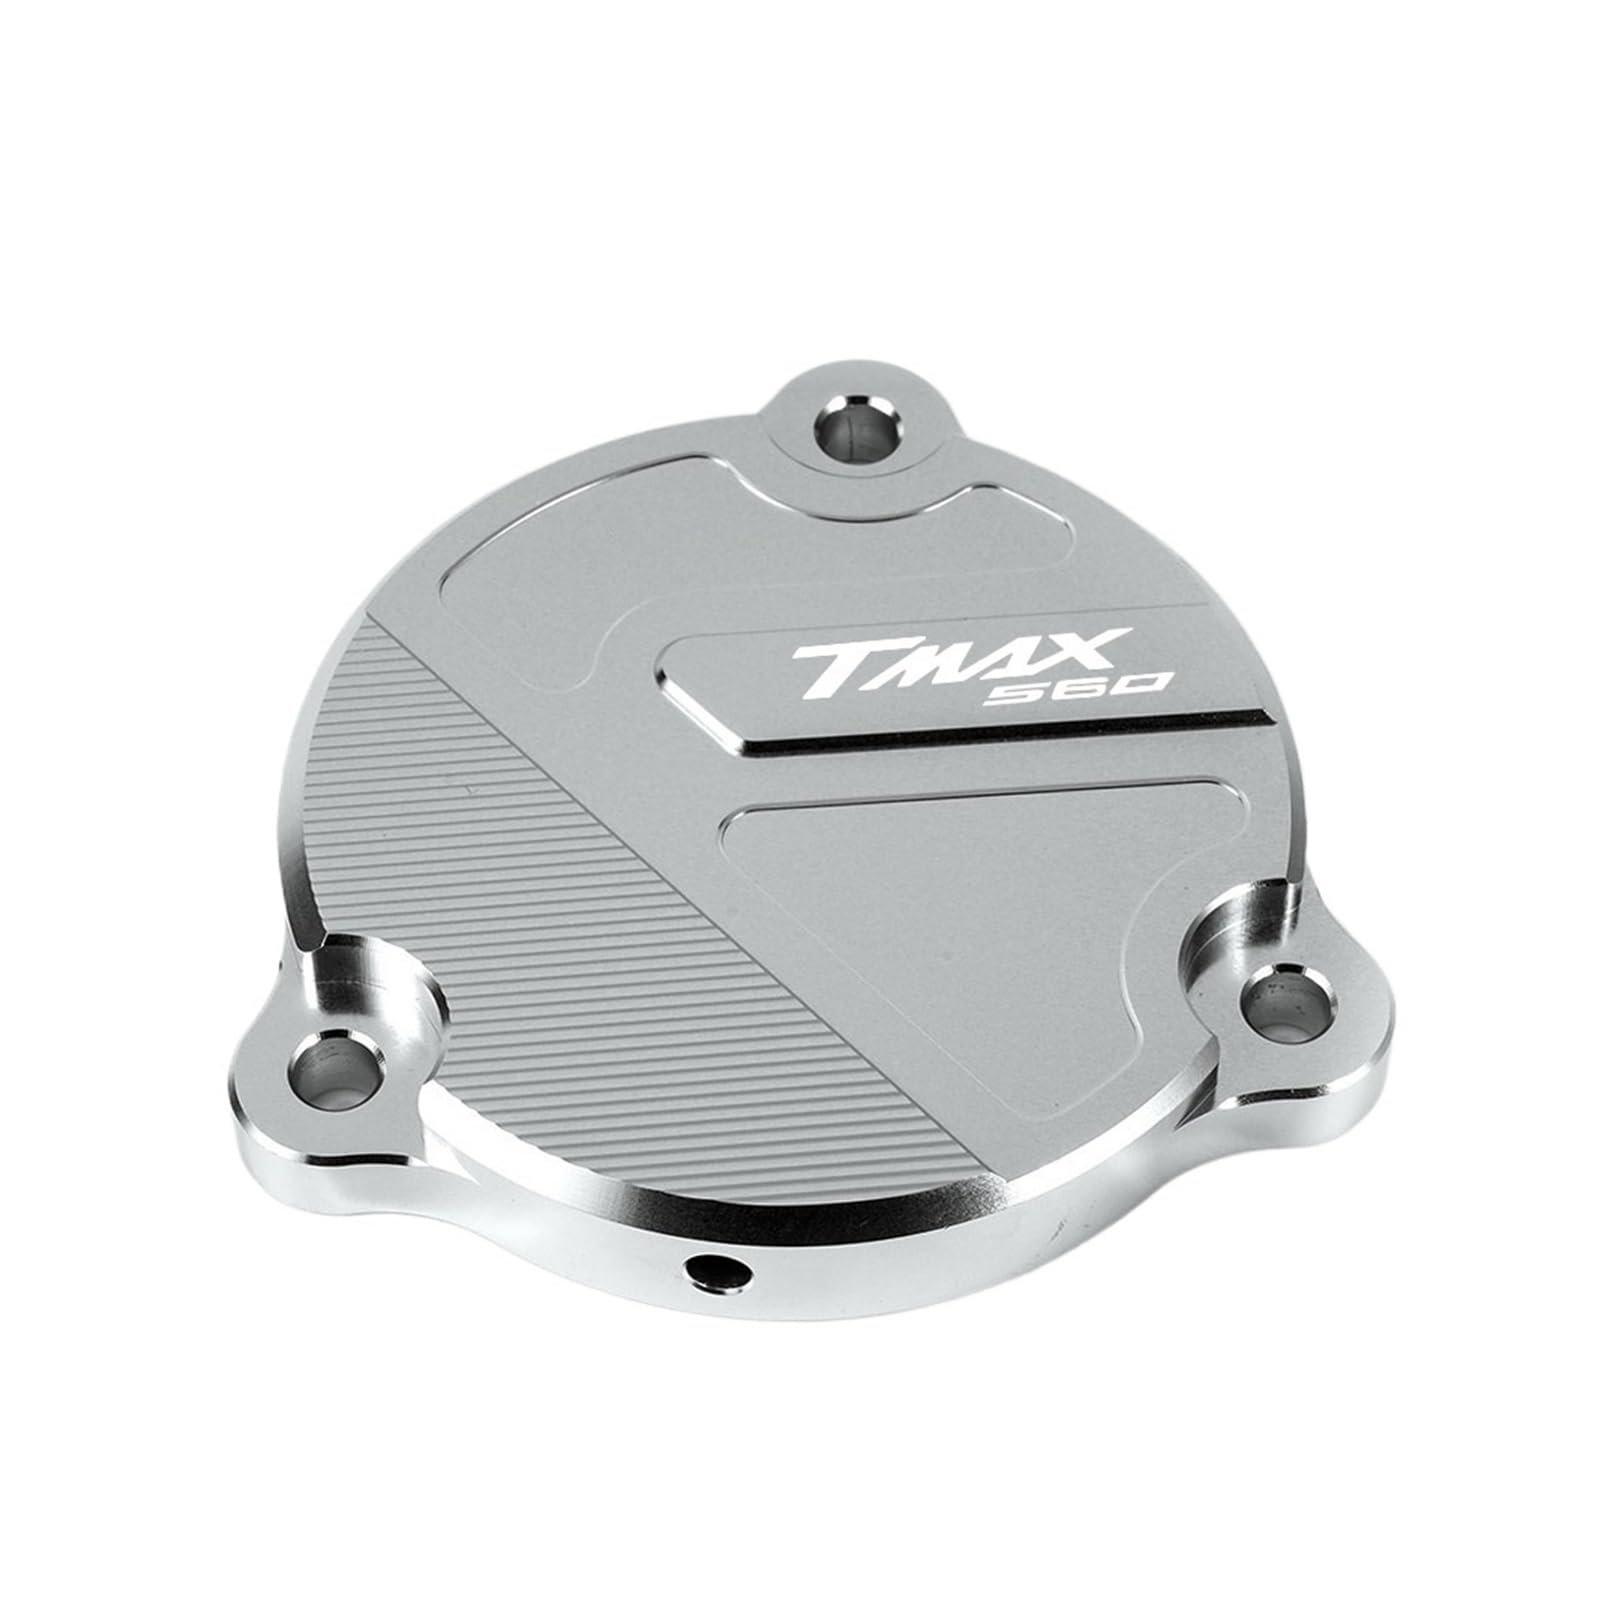 LTADX Motorrad CNC Aluminium Rahmen Loch Abdeckung Vordere Antriebswelle Abdeckung Schutz Kompatibel Mit Tmax 560 Tech Max 2019-2022(Silver) von LTADX